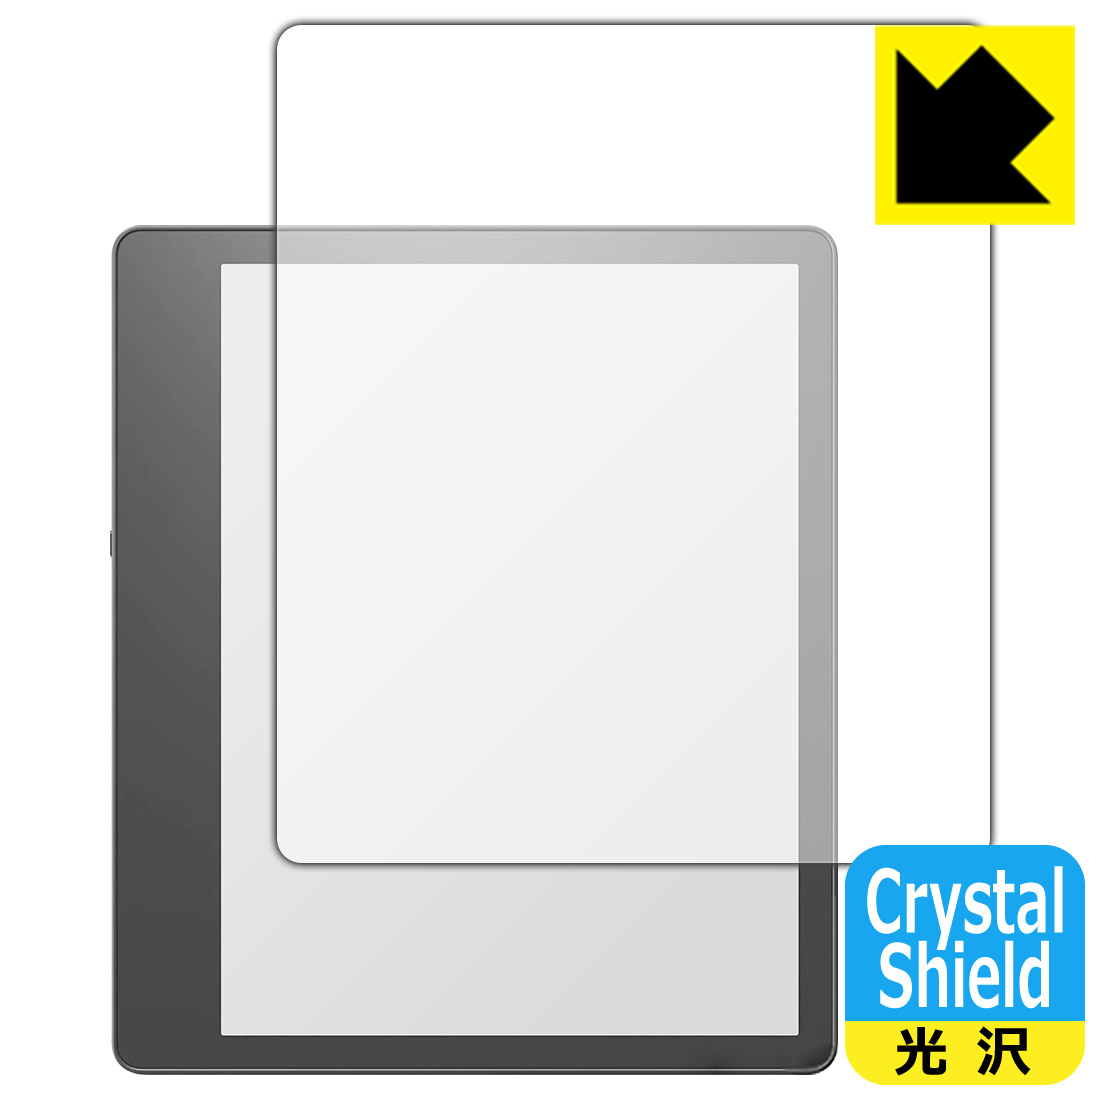 ●対応機種 : amazon Kindle Scribe (第1世代・2022年モデル)専用の商品です。●製品内容 : 画面用フィルム3枚・クリーニングワイプ1個●「Crystal Shield」は高い透明度と光沢感で、保護フィルムを貼っていないかのようなクリア感のある『光沢タイプの保護フィルム』●安心の国産素材を使用。日本国内の自社工場で製造し出荷しています。 ★貼り付け失敗交換サービス対象商品★【ポスト投函送料無料】商品は【ポスト投函発送 (追跡可能メール便)】で発送します。お急ぎ、配達日時を指定されたい方は以下のクーポンを同時購入ください。【お急ぎ便クーポン】　プラス110円(税込)で速達扱いでの発送。お届けはポストへの投函となります。【配達日時指定クーポン】　プラス550円(税込)で配達日時を指定し、宅配便で発送させていただきます。【お急ぎ便クーポン】はこちらをクリック【配達日時指定クーポン】はこちらをクリック 　 貼っていることを意識させないほどの高い透明度に、高級感あふれる光沢・クリアな仕上げとなります。 動画視聴や画像編集など、機器本来の発色を重視したい方におすすめです。 ハードコート加工がされており、キズや擦れに強くなっています。簡単にキズがつかず長くご利用いただけます。 表面はフッ素コーティングがされており、皮脂や汚れがつきにくく、また、落ちやすくなっています。 指滑りもなめらかで、快適な使用感です。 油性マジックのインクもはじきますので簡単に拭き取れます。 接着面は気泡の入りにくい特殊な自己吸着タイプです。素材に柔軟性があり、貼り付け作業も簡単にできます。また、はがすときにガラス製フィルムのように割れてしまうことはありません。 貼り直しが何度でもできるので、正しい位置へ貼り付けられるまでやり直すことができます。 抗菌加工によりフィルム表面の菌の繁殖を抑えることができます。清潔な画面を保ちたい方におすすめです。 ※抗菌率99.9％ / JIS Z2801 抗菌性試験方法による評価 最高級グレードの国産素材を日本国内の弊社工場で加工している完全な Made in Japan です。安心の品質をお届けします。 使用上の注意 ●本製品は機器の画面をキズなどから保護するフィルムです。他の目的にはご使用にならないでください。 ●本製品は液晶保護および機器本体を完全に保護することを保証するものではありません。機器の破損、損傷、故障、その他損害につきましては一切の責任を負いかねます。 ●製品の性質上、画面操作の反応が変化したり、表示等が変化して見える場合がございます。 ●貼り付け作業時の失敗(位置ズレ、汚れ、ゆがみ、折れ、気泡など)および取り外し作業時の破損、損傷などについては、一切の責任を負いかねます。 ●水に濡れた状態でのご使用は吸着力の低下などにより、保護フィルムがはがれてしまう場合がございます。防水対応の機器でご使用の場合はご注意ください。 ●アルコール類やその他薬剤を本製品に付着させないでください。表面のコーティングや吸着面が変質するおそれがあります。 ●品質向上のため、仕様などを予告なく変更する場合がございますので、予めご了承ください。